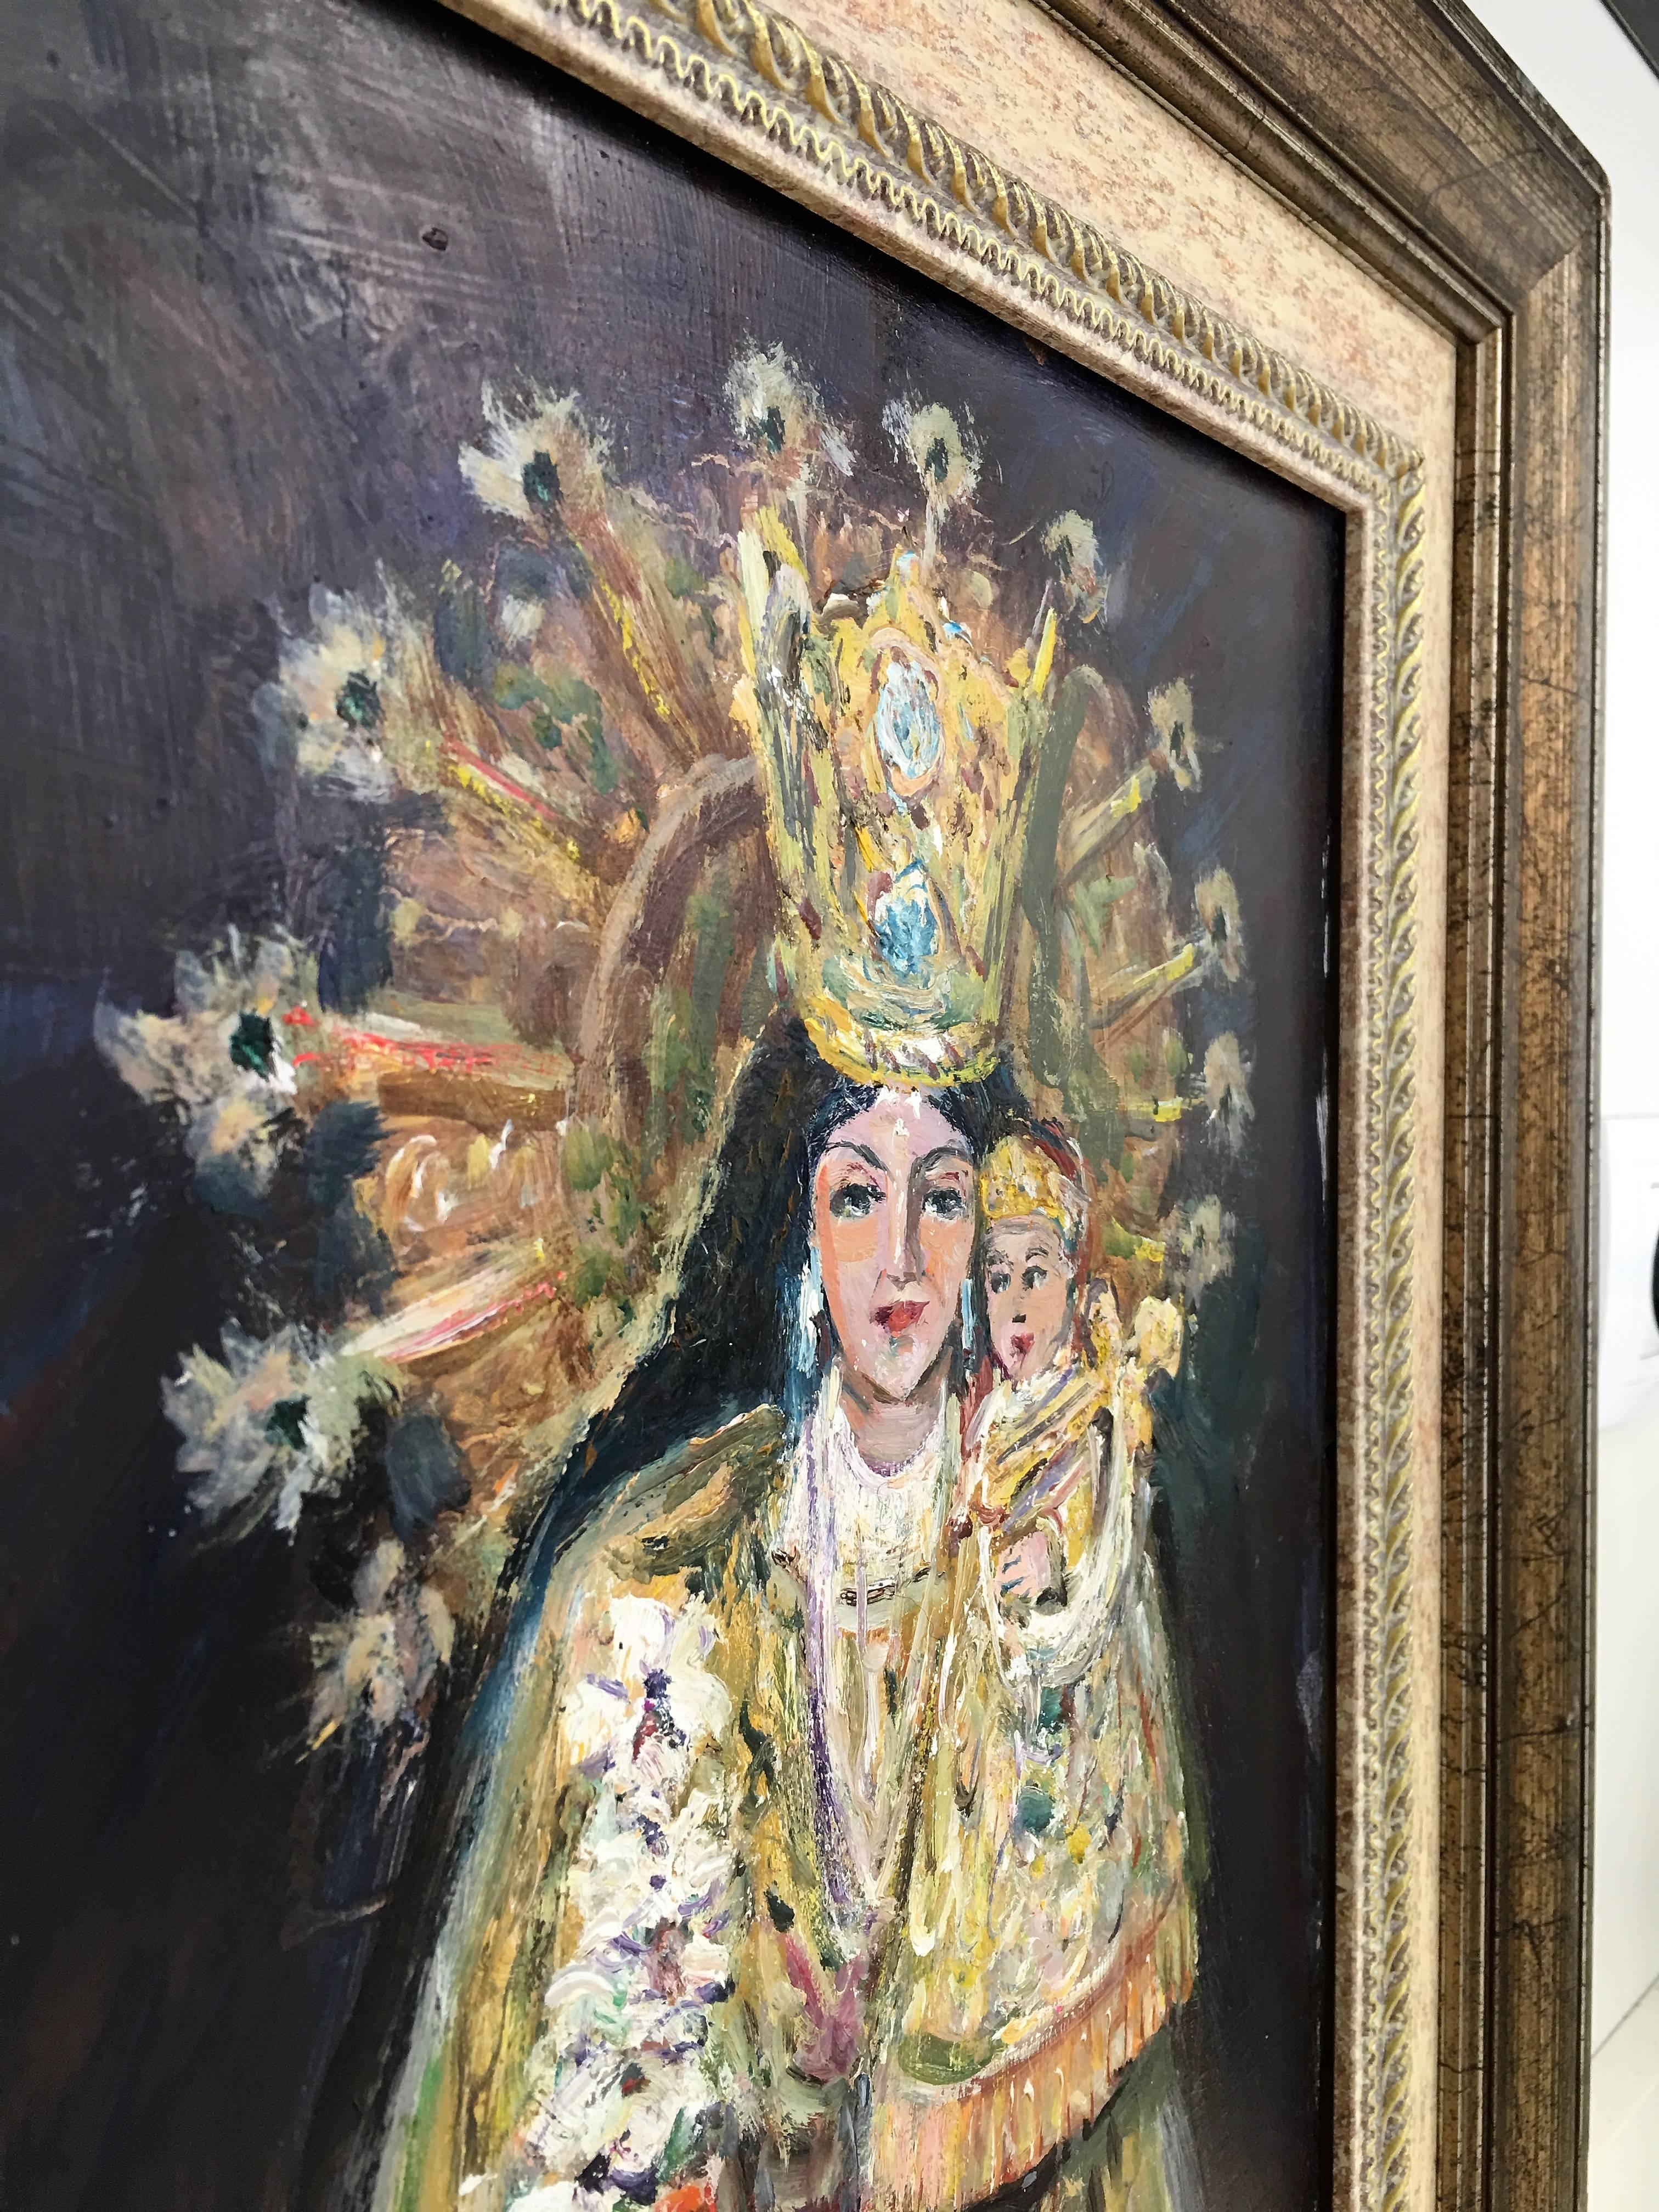 peinture à l'huile du 20e siècle représentant une Vierge à l'Enfant par Arnedo Linares, Espagne (1925-2011)
Cette huile représente le saint patron 